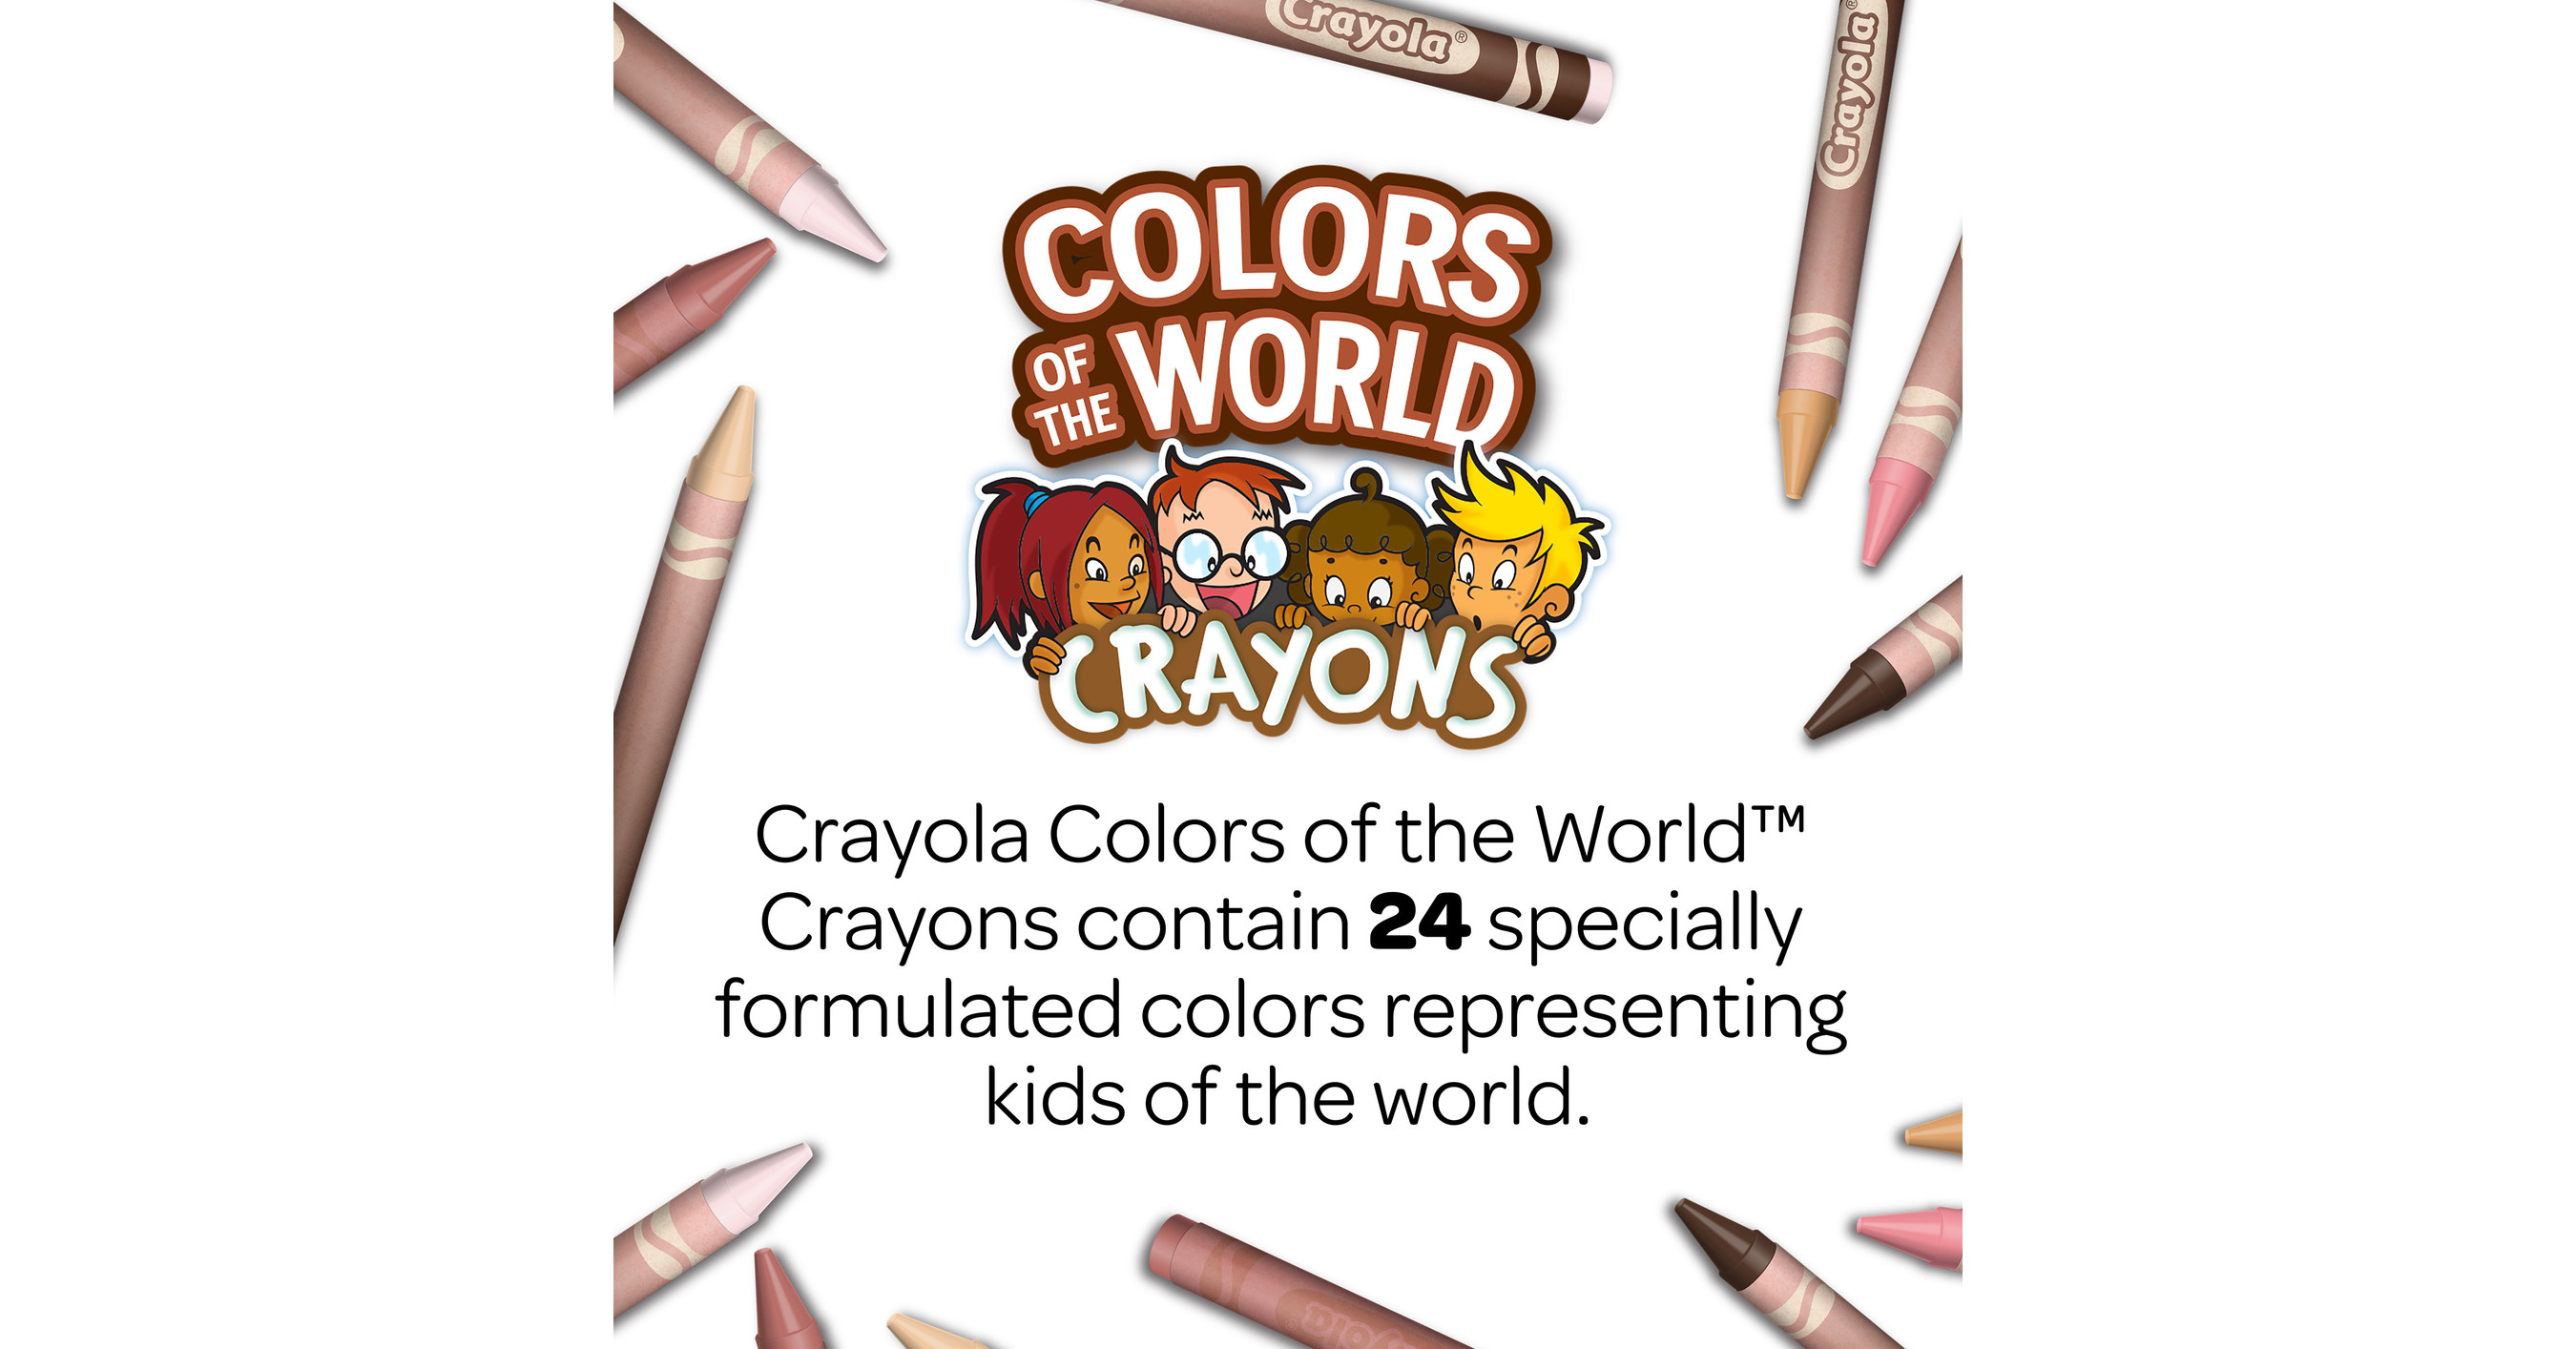 Crayon design express